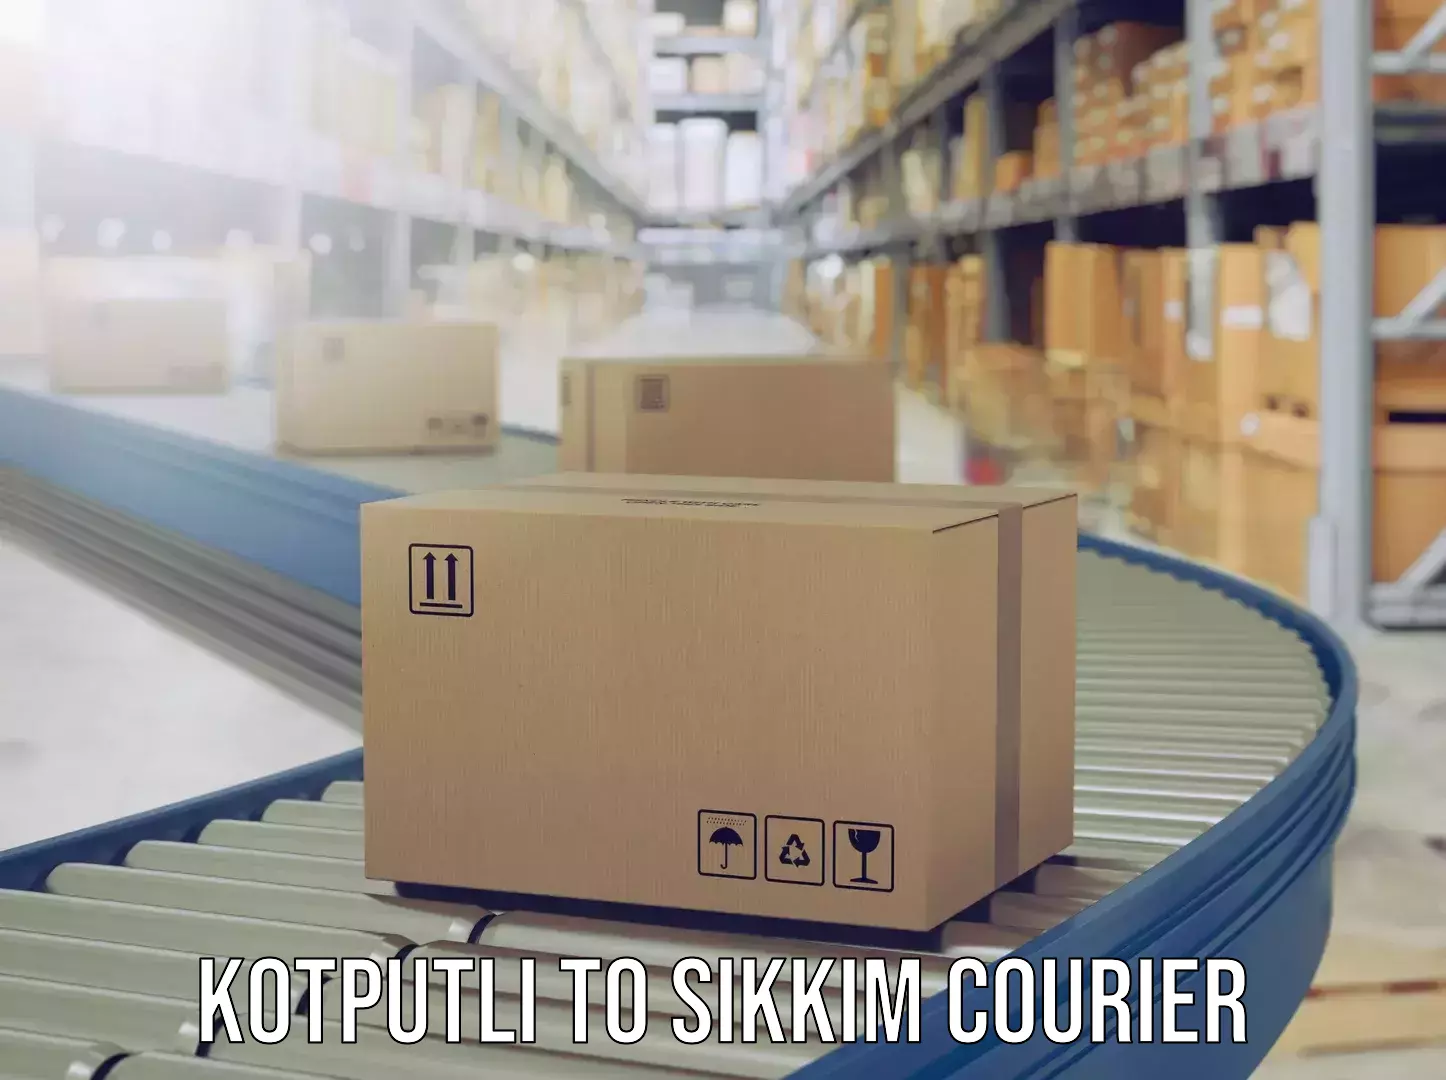 Baggage shipping optimization Kotputli to East Sikkim